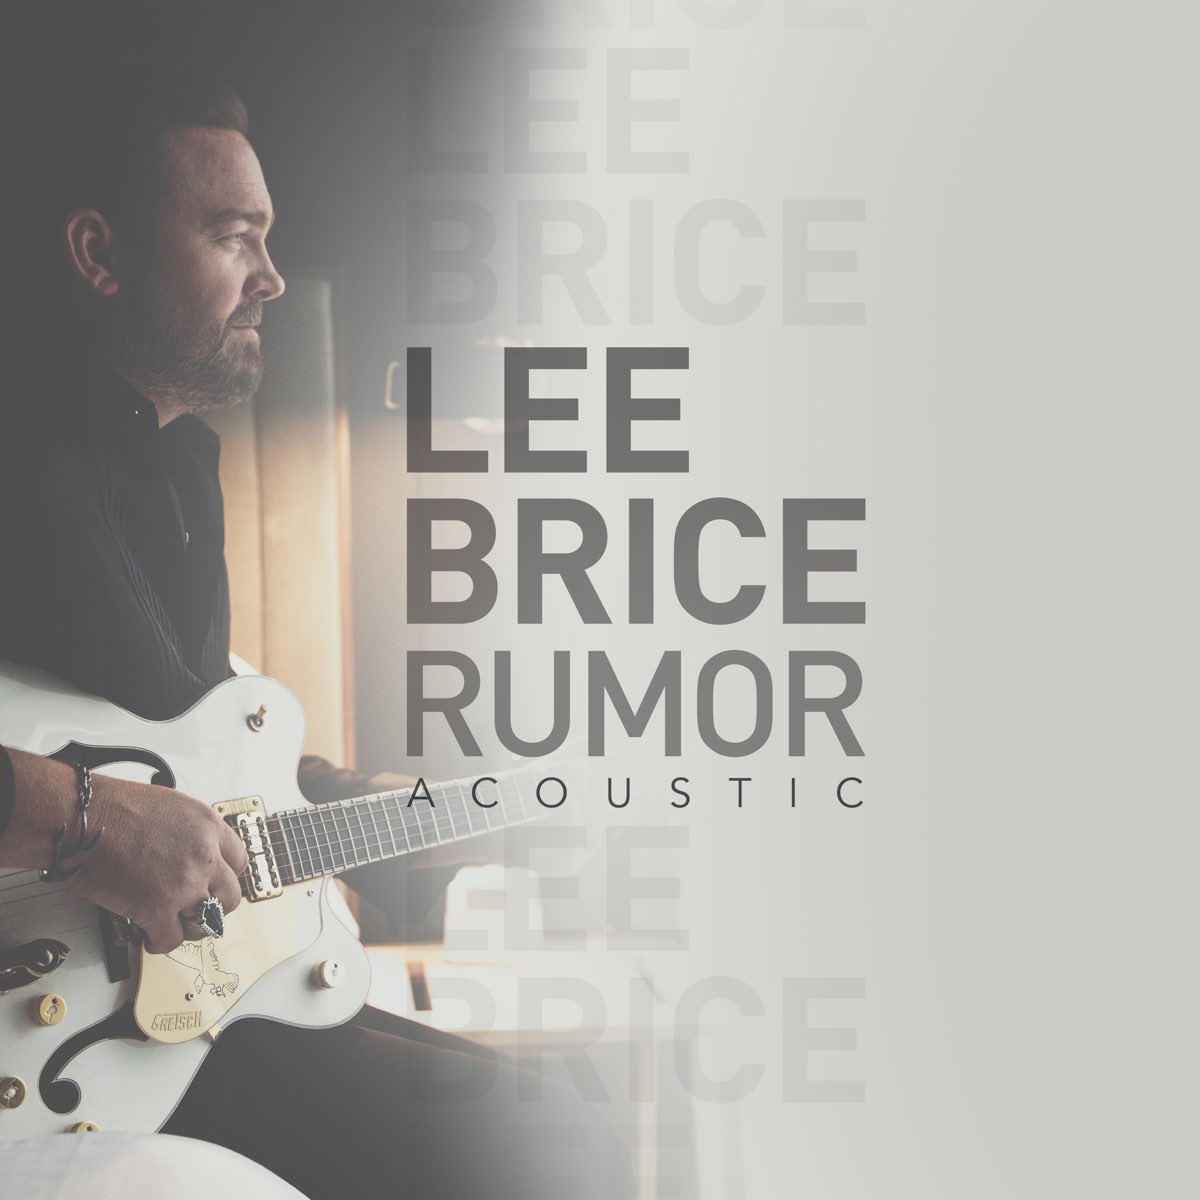 Rumor (Acoustic) - Single by Lee Brice on Apple Music